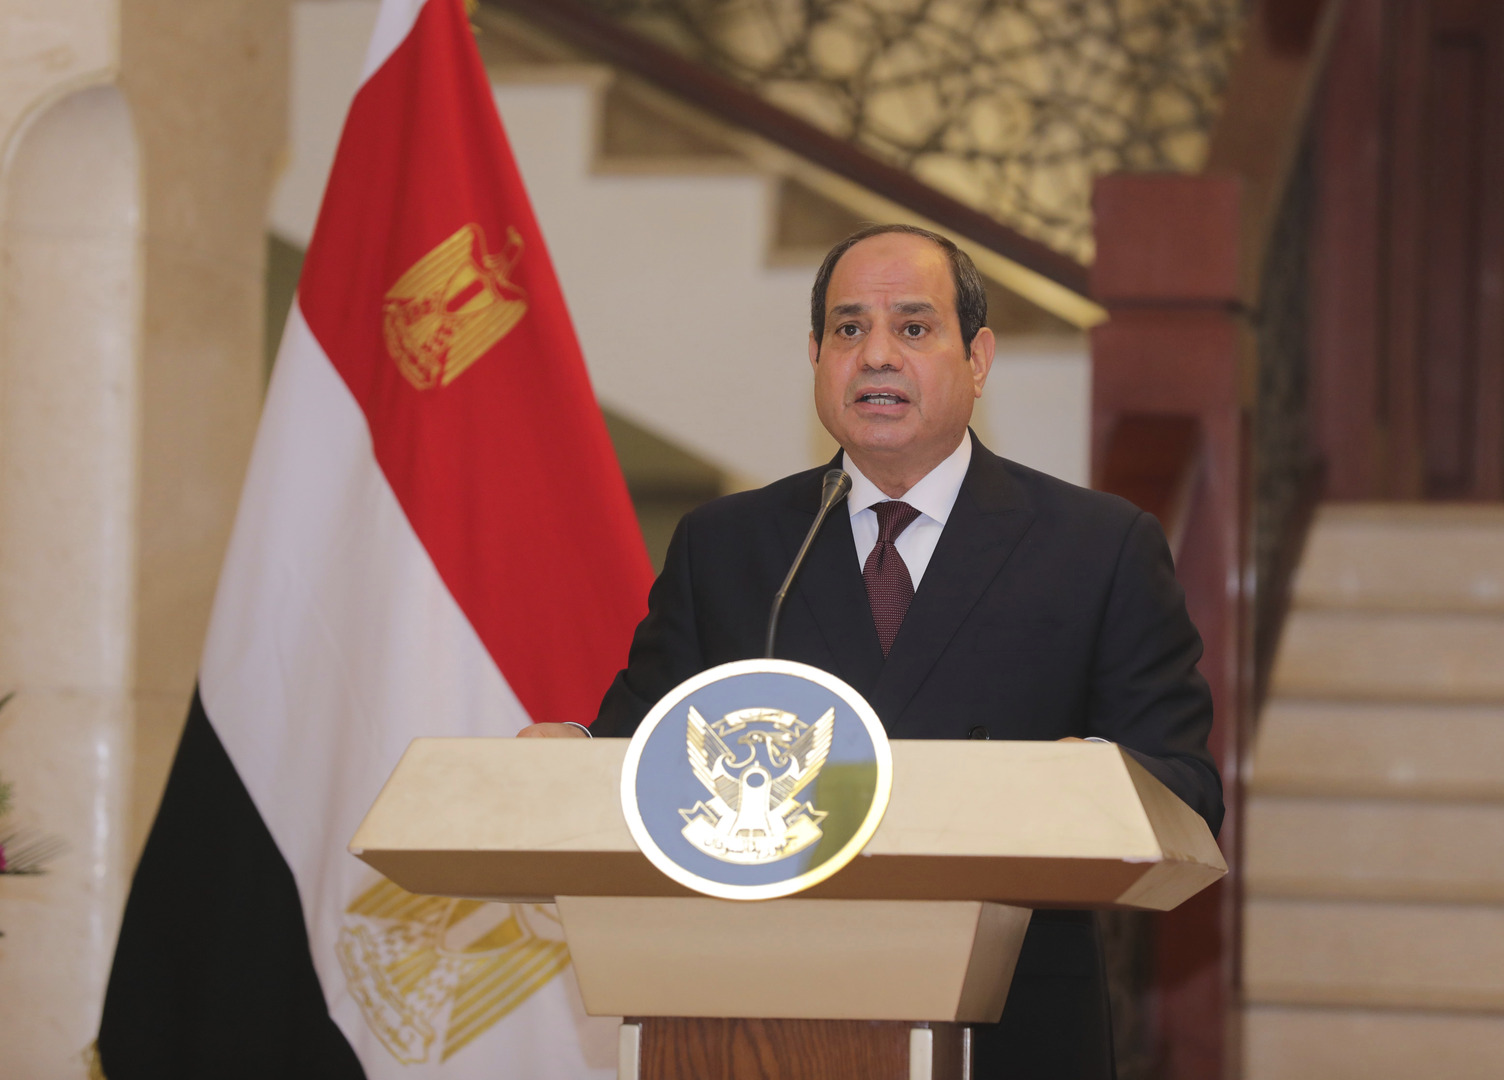 الرئيس المصري، عبد الفتاح السيسي